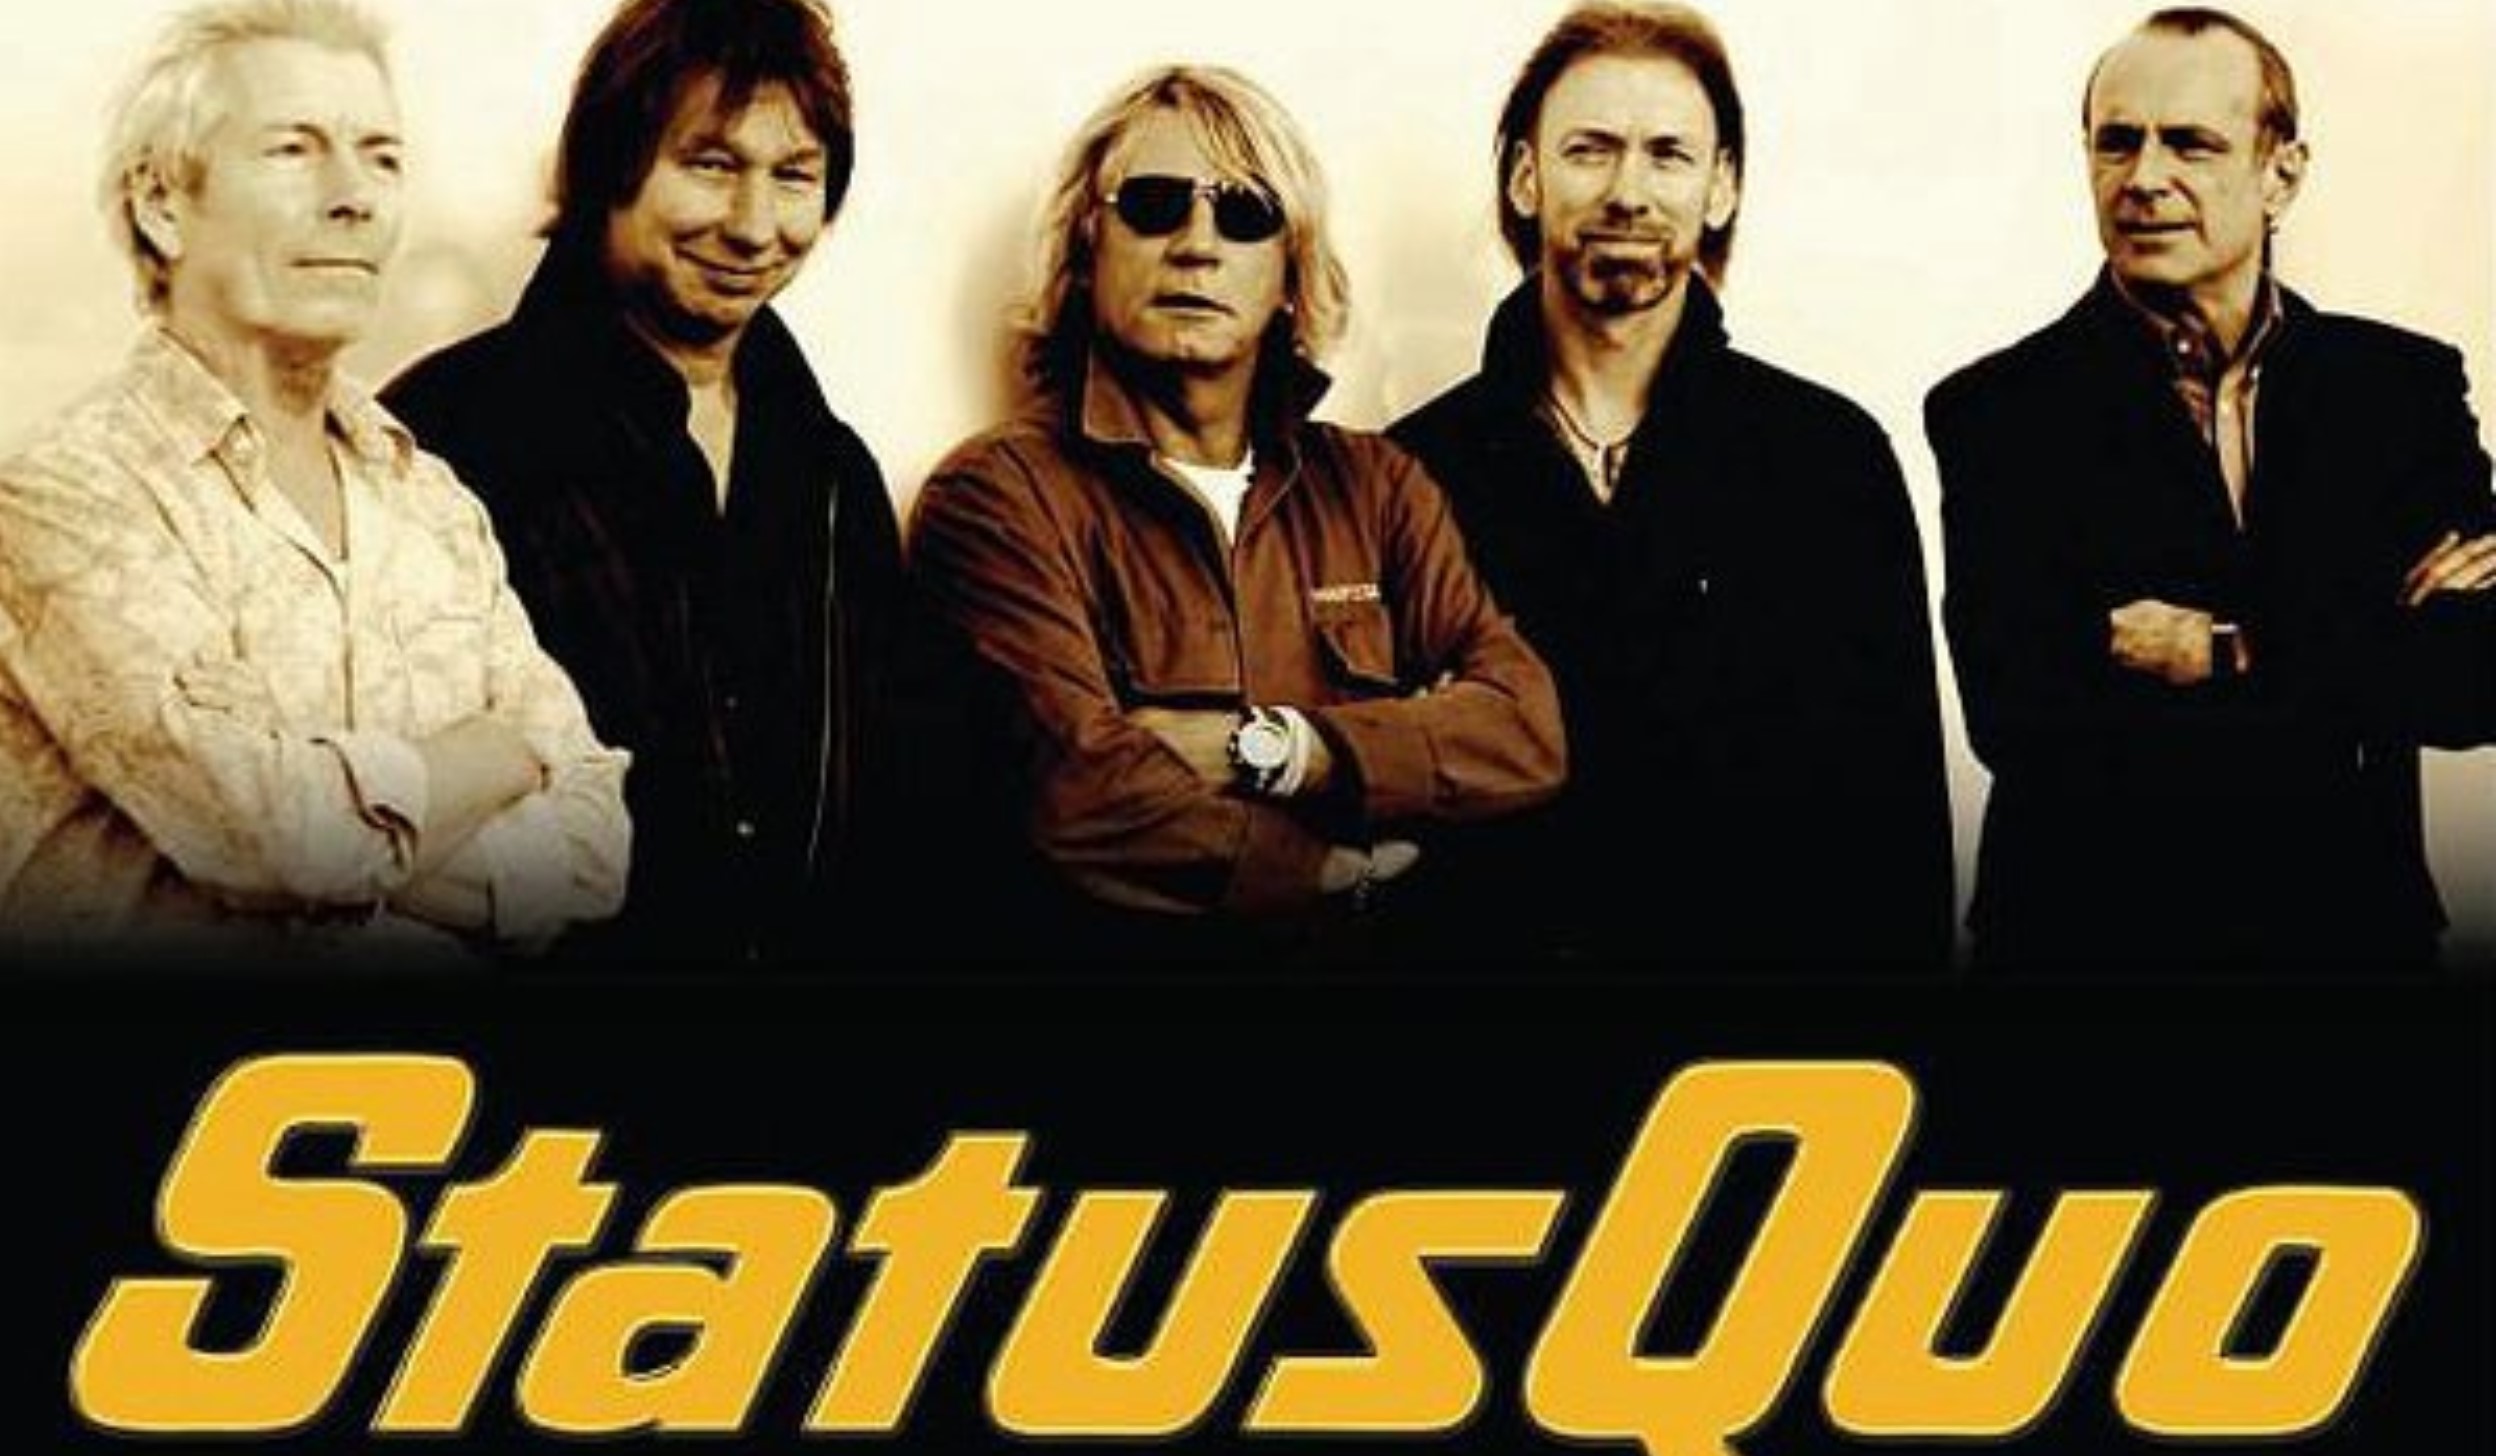 Слушать статус кво лучшее. Группа status Quo. Группа status Quo 1984. Статус кво группа сейчас. Status Quo фото группы.